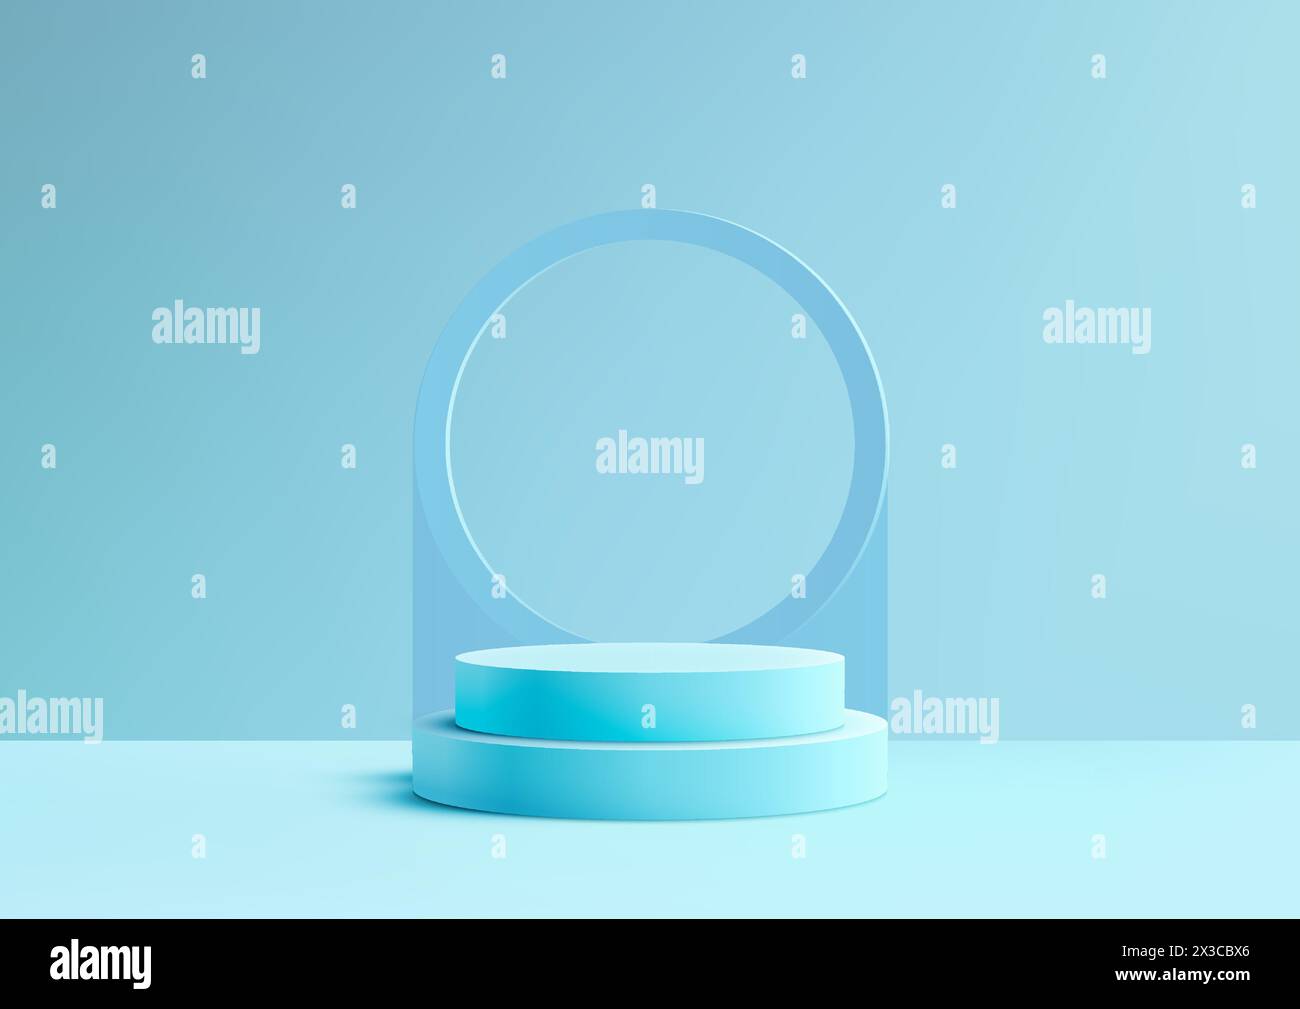 Blaues 3D-Podium mit einem Kreis in der Mitte, auf weichem blauem Hintergrund in minimalem Stil. Dieses Modell eignet sich perfekt für die Präsentation von Produkten. Vec Stock Vektor